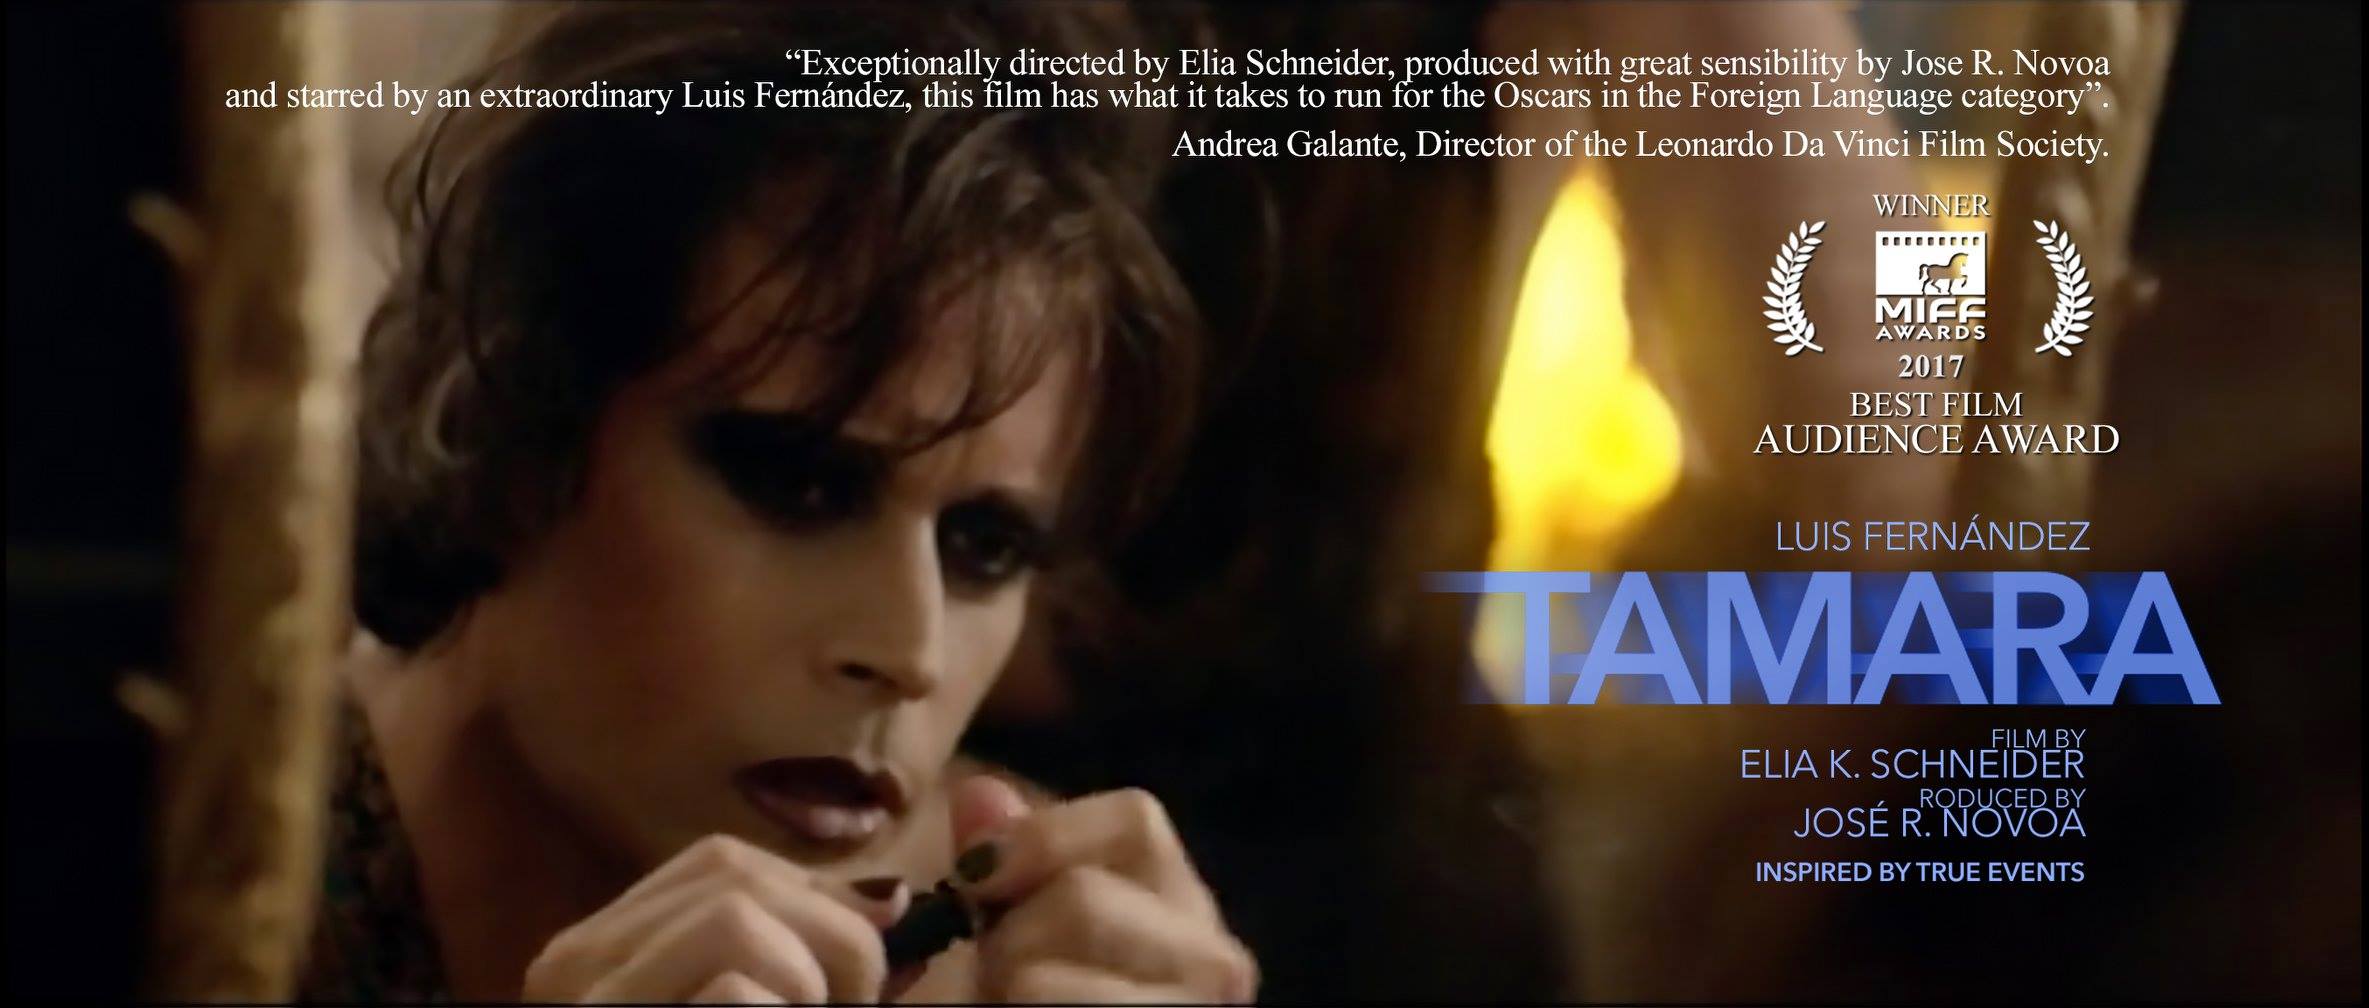 Película “Tamara” es una de las candidatas para representar a Venezuela en los Premios Óscar